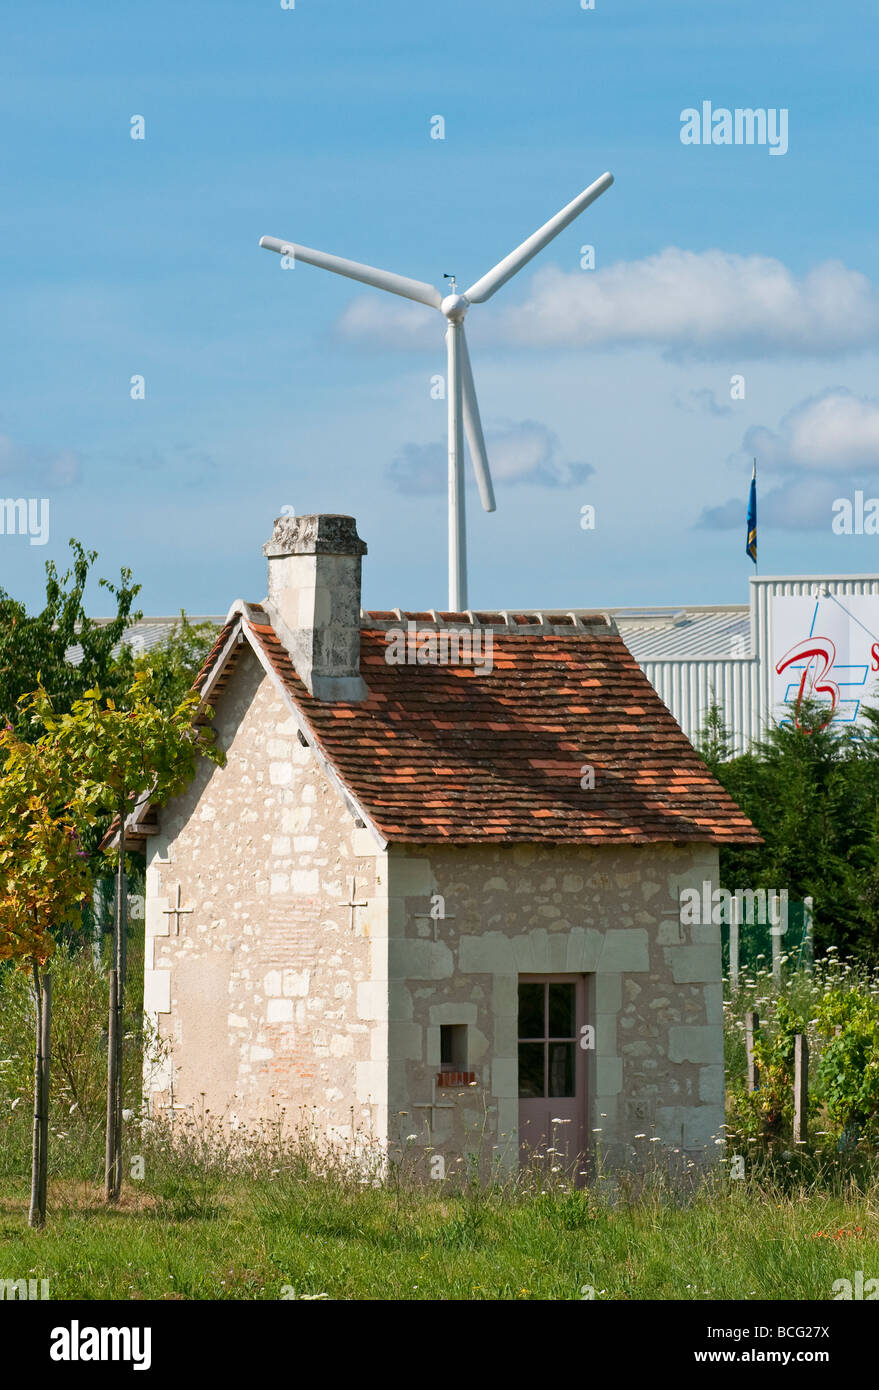 Petite maison et éolienne - Indre-et-Loire, France. Banque D'Images